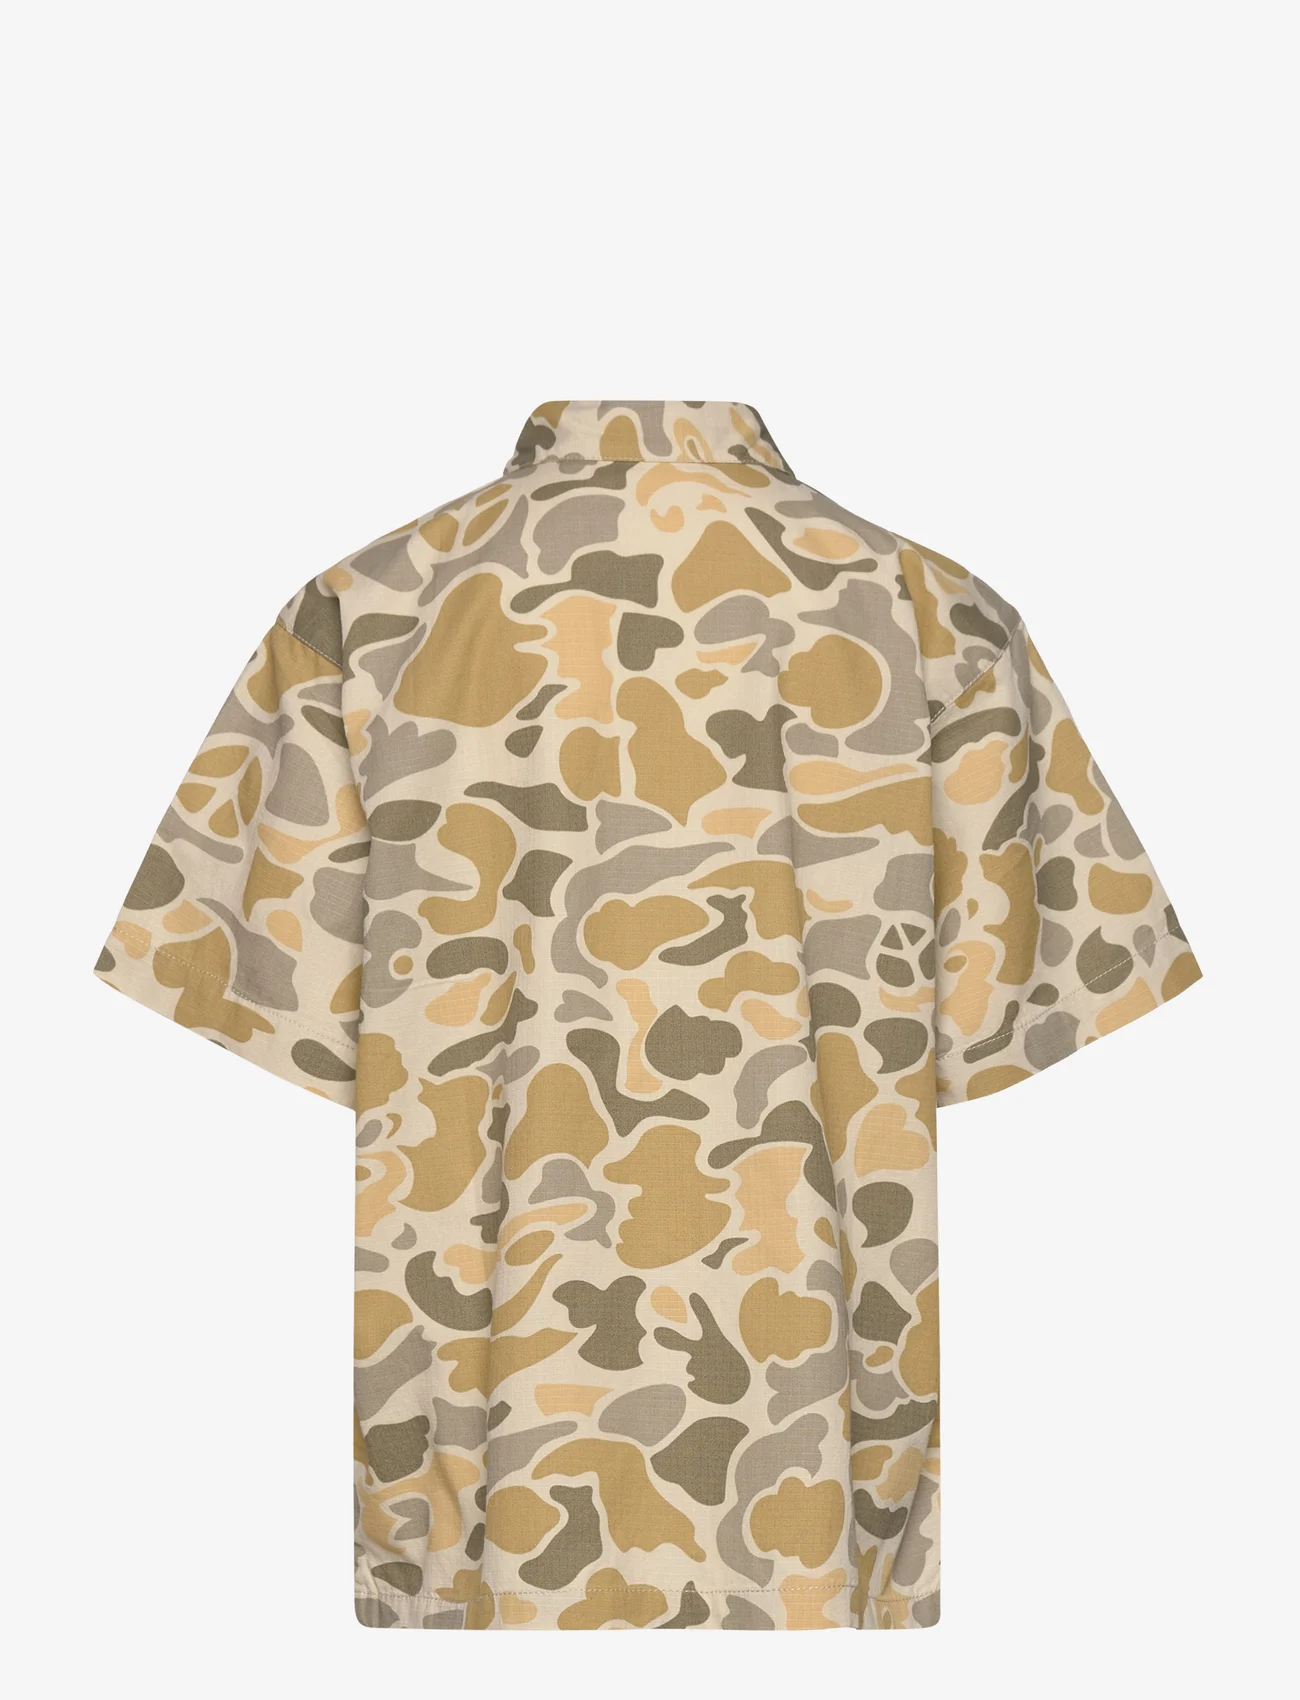 Molo - Rio - kortærmede skjorter - sandy shapes - 1